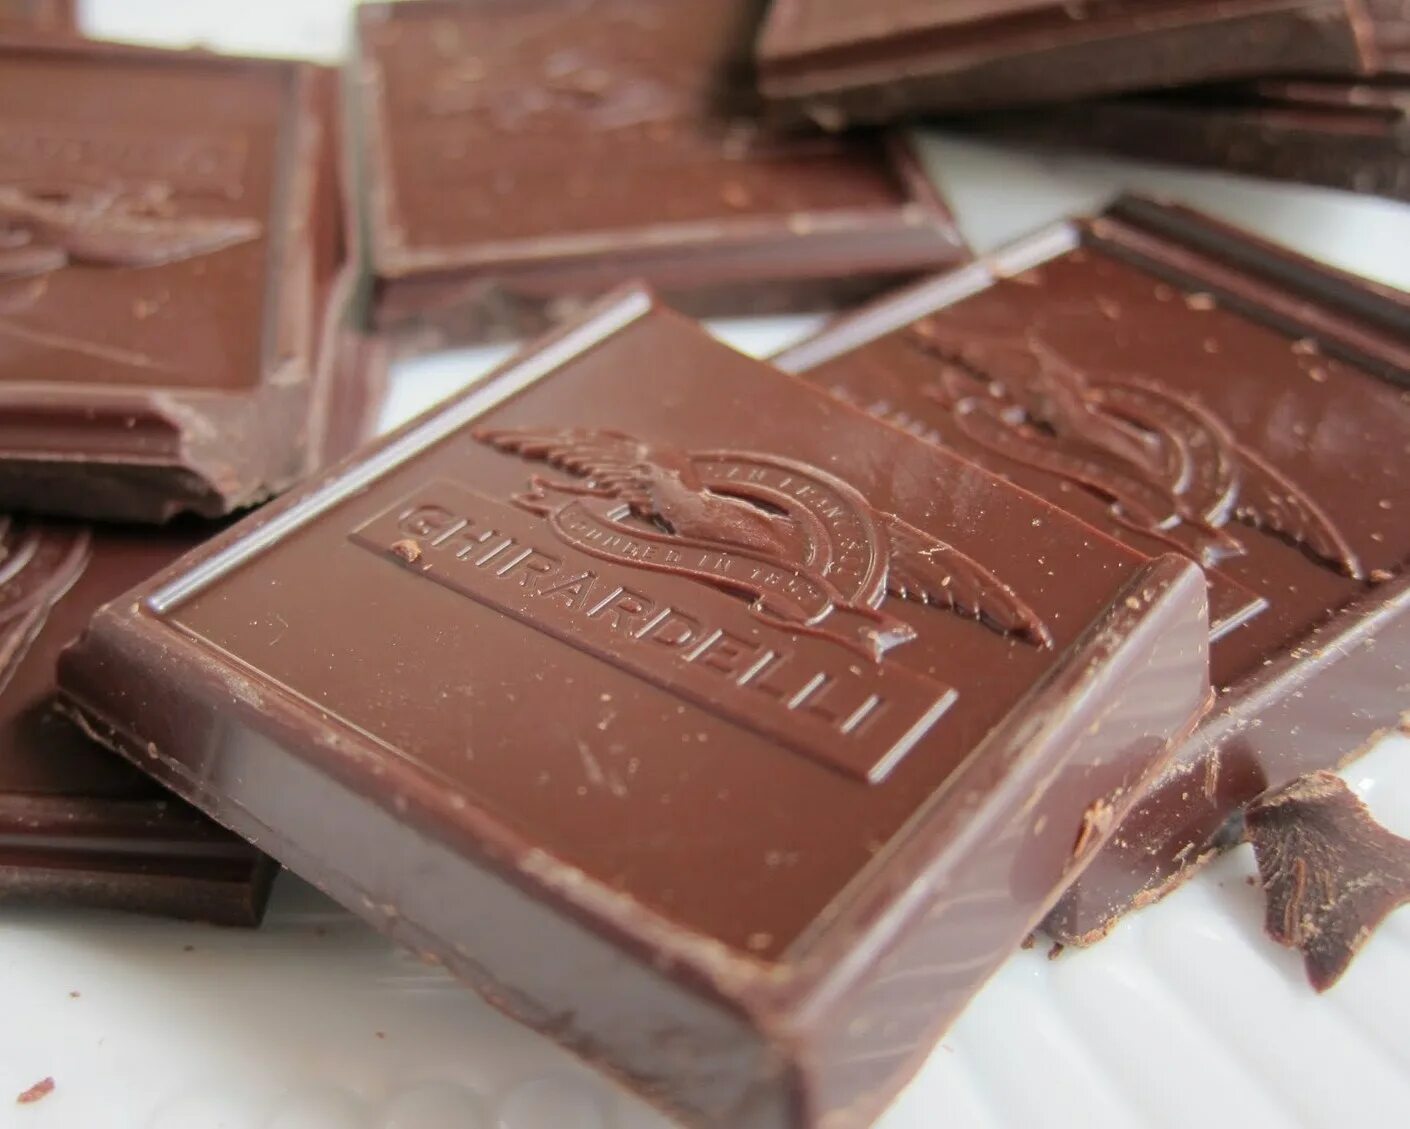 Шоколад купить в махачкале. Мончи шоколадный. Спрос на шоколад. Фински1 шоколад. Самый первый шоколад.